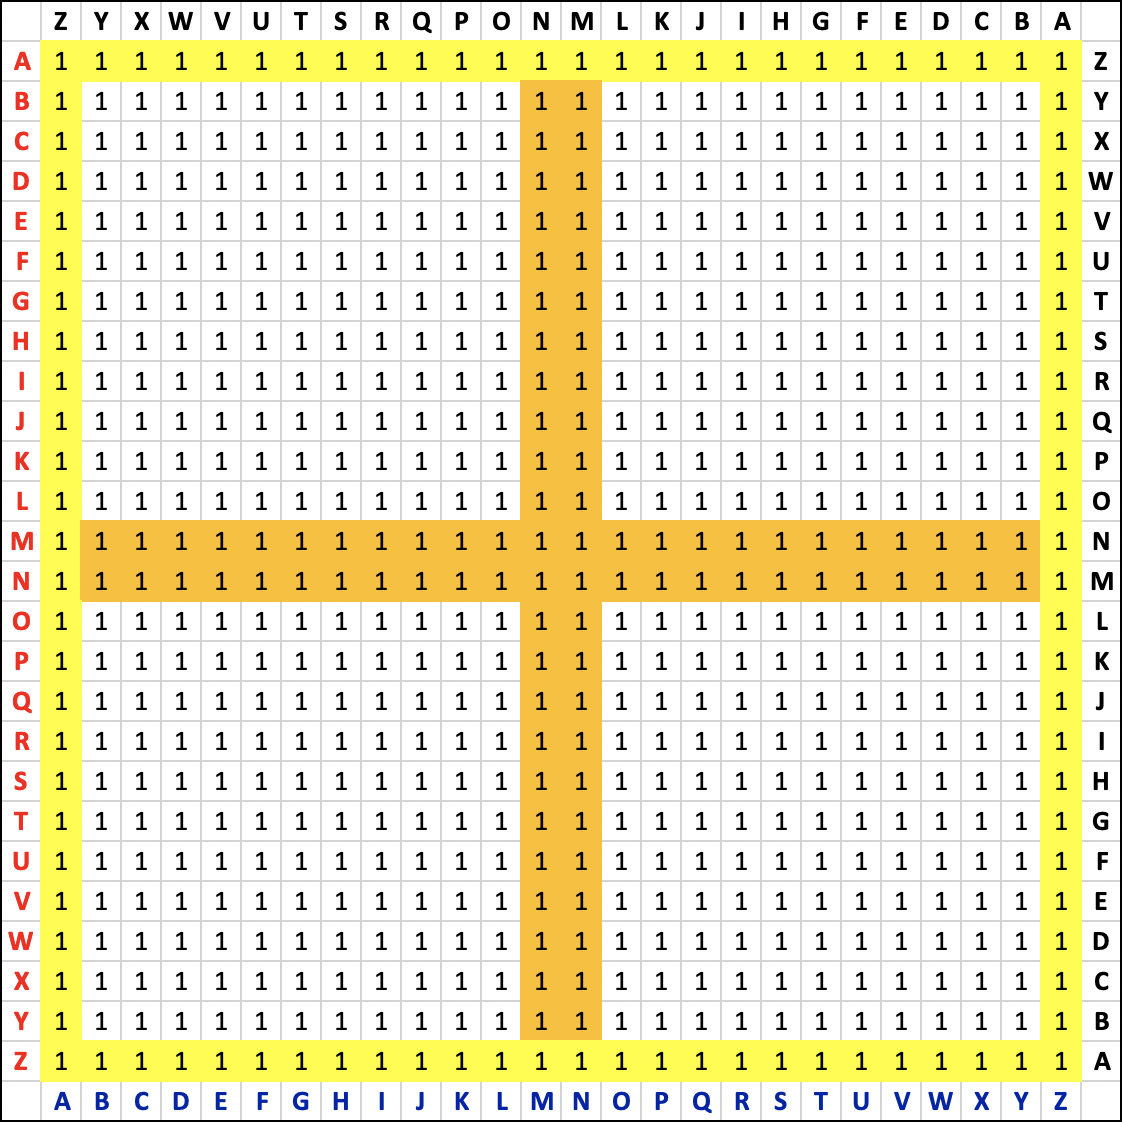 La croix alphanumérique